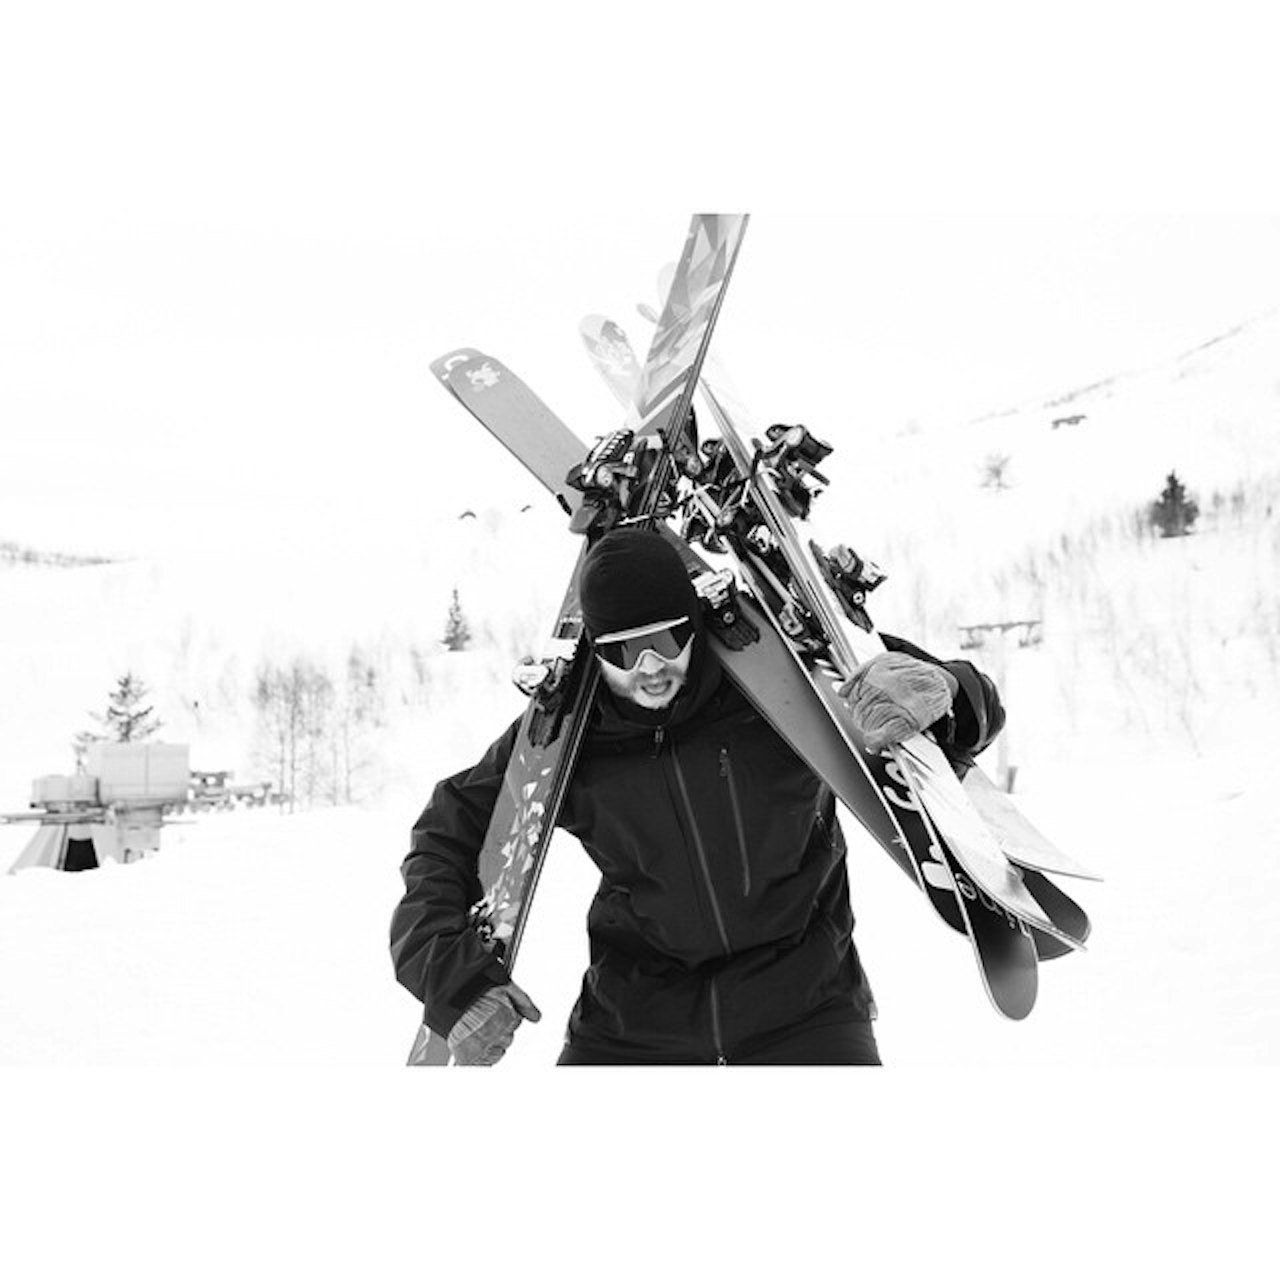 GOD BØR Å BÆRE: Skitesten er mange ting – blant annet mye, mye bæring. Her er Hans Petter Hval i aksjon. Foto: Lars-Kristian Haugen